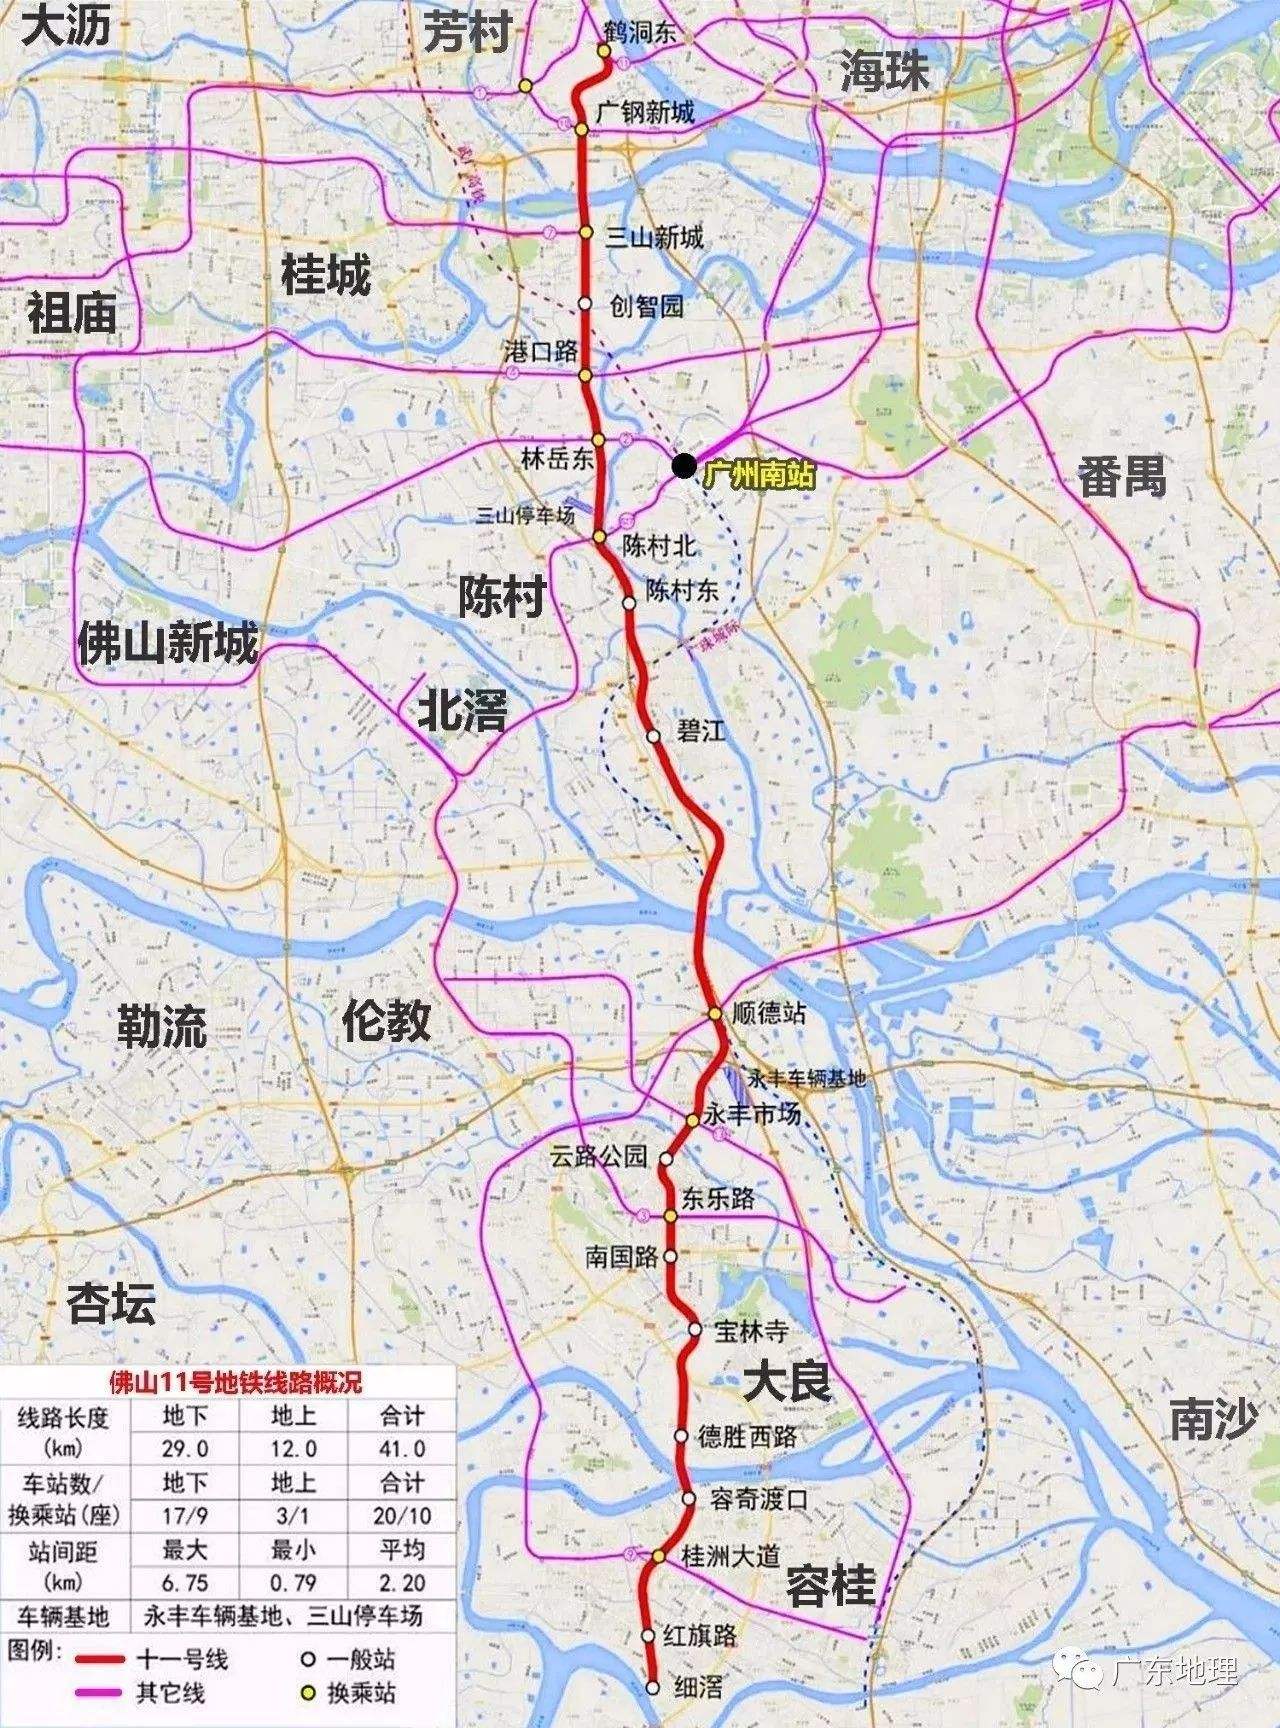 公告中,,顺德区境内有山市2号线,3号线和广州地铁7号线